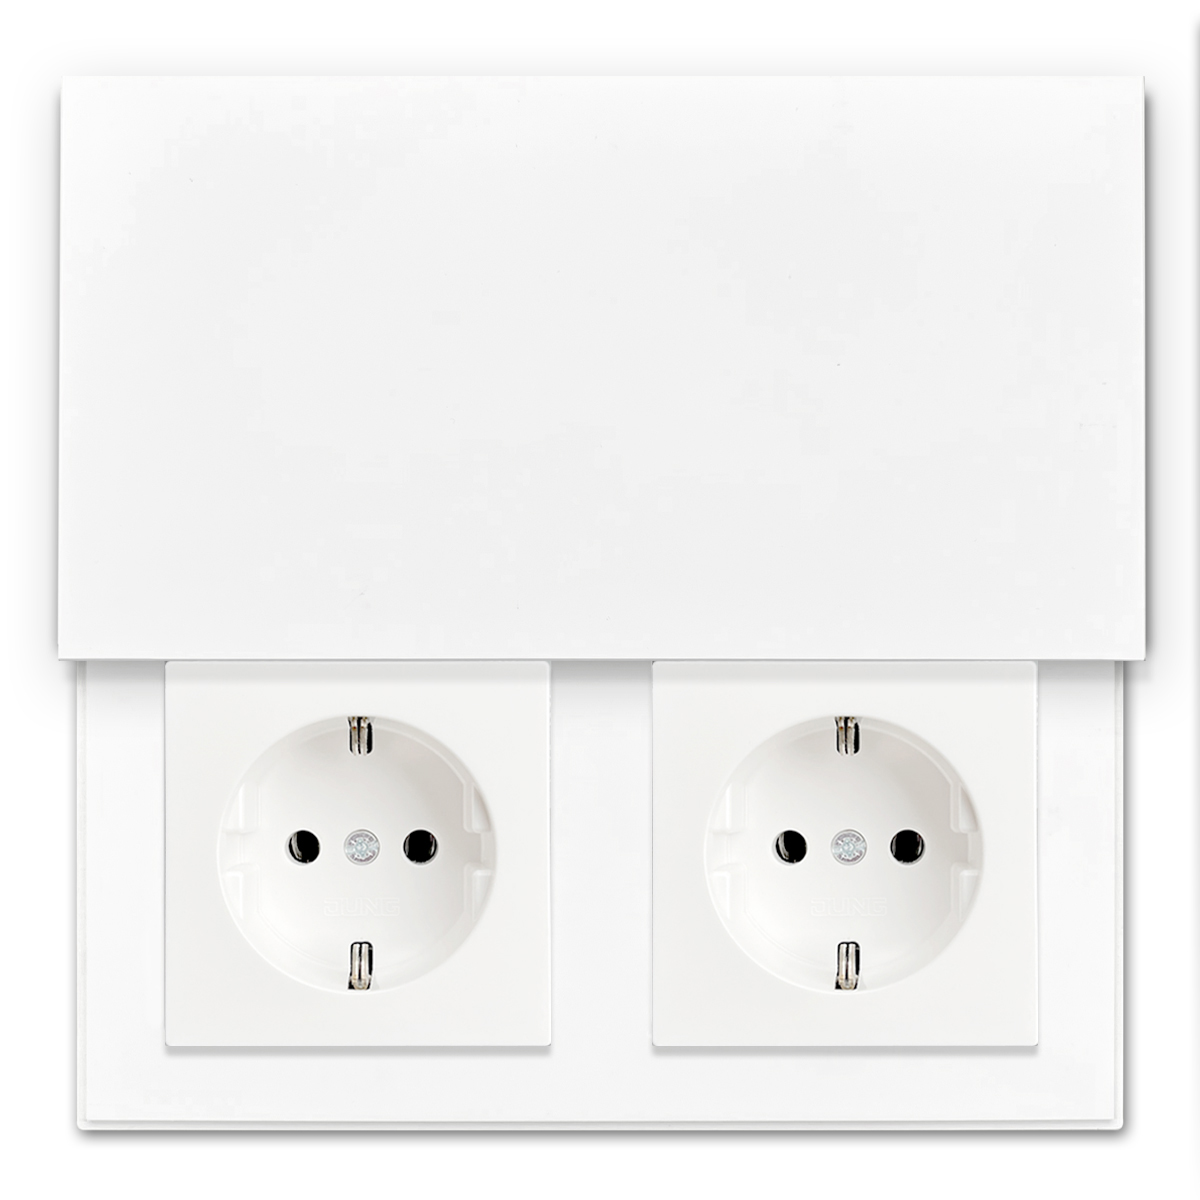 Complete bundle: INVISIBLE socket outlet. 2-fold, alpine white. Design socket outlet and kitchen socket outlet.